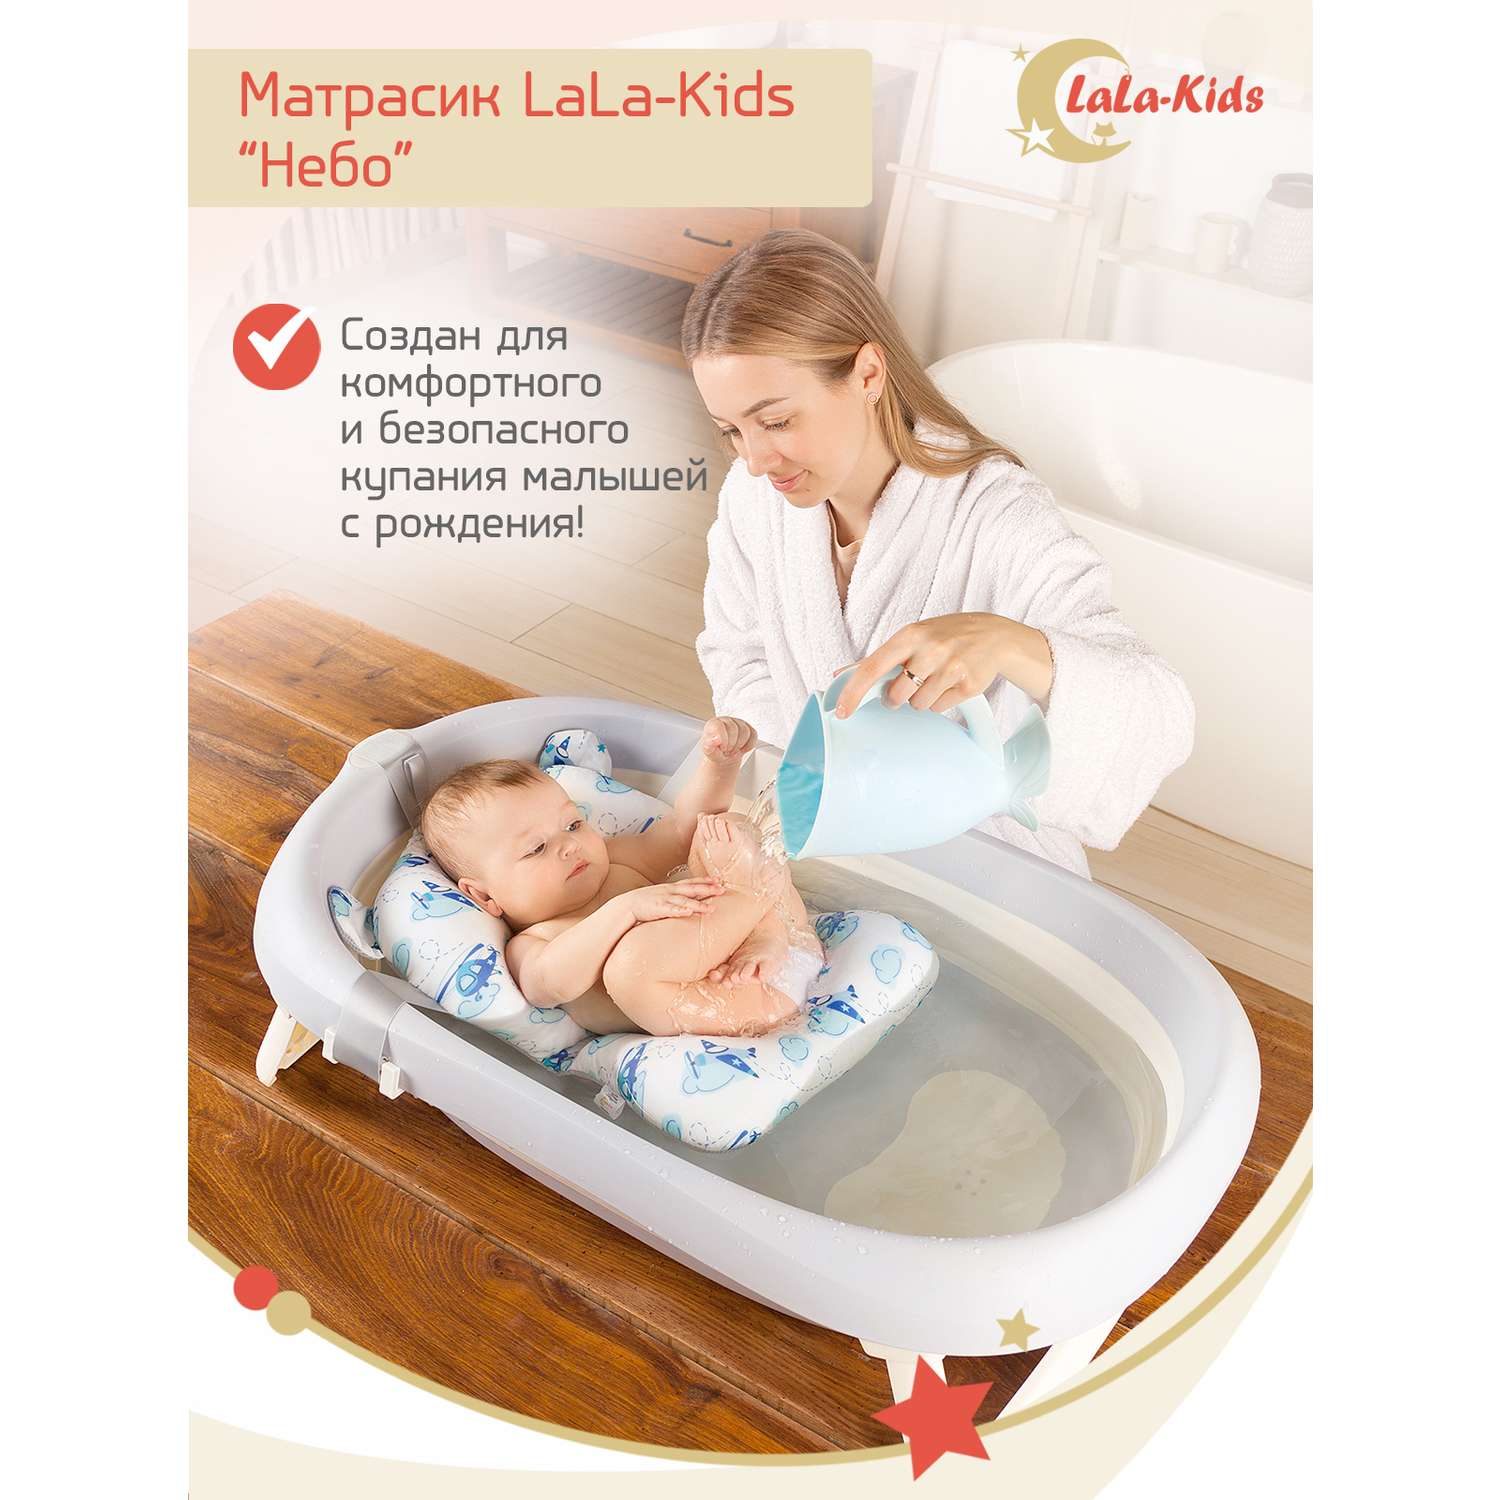 Матрасик Самолетики LaLa-Kids для купания новорожденных - фото 2